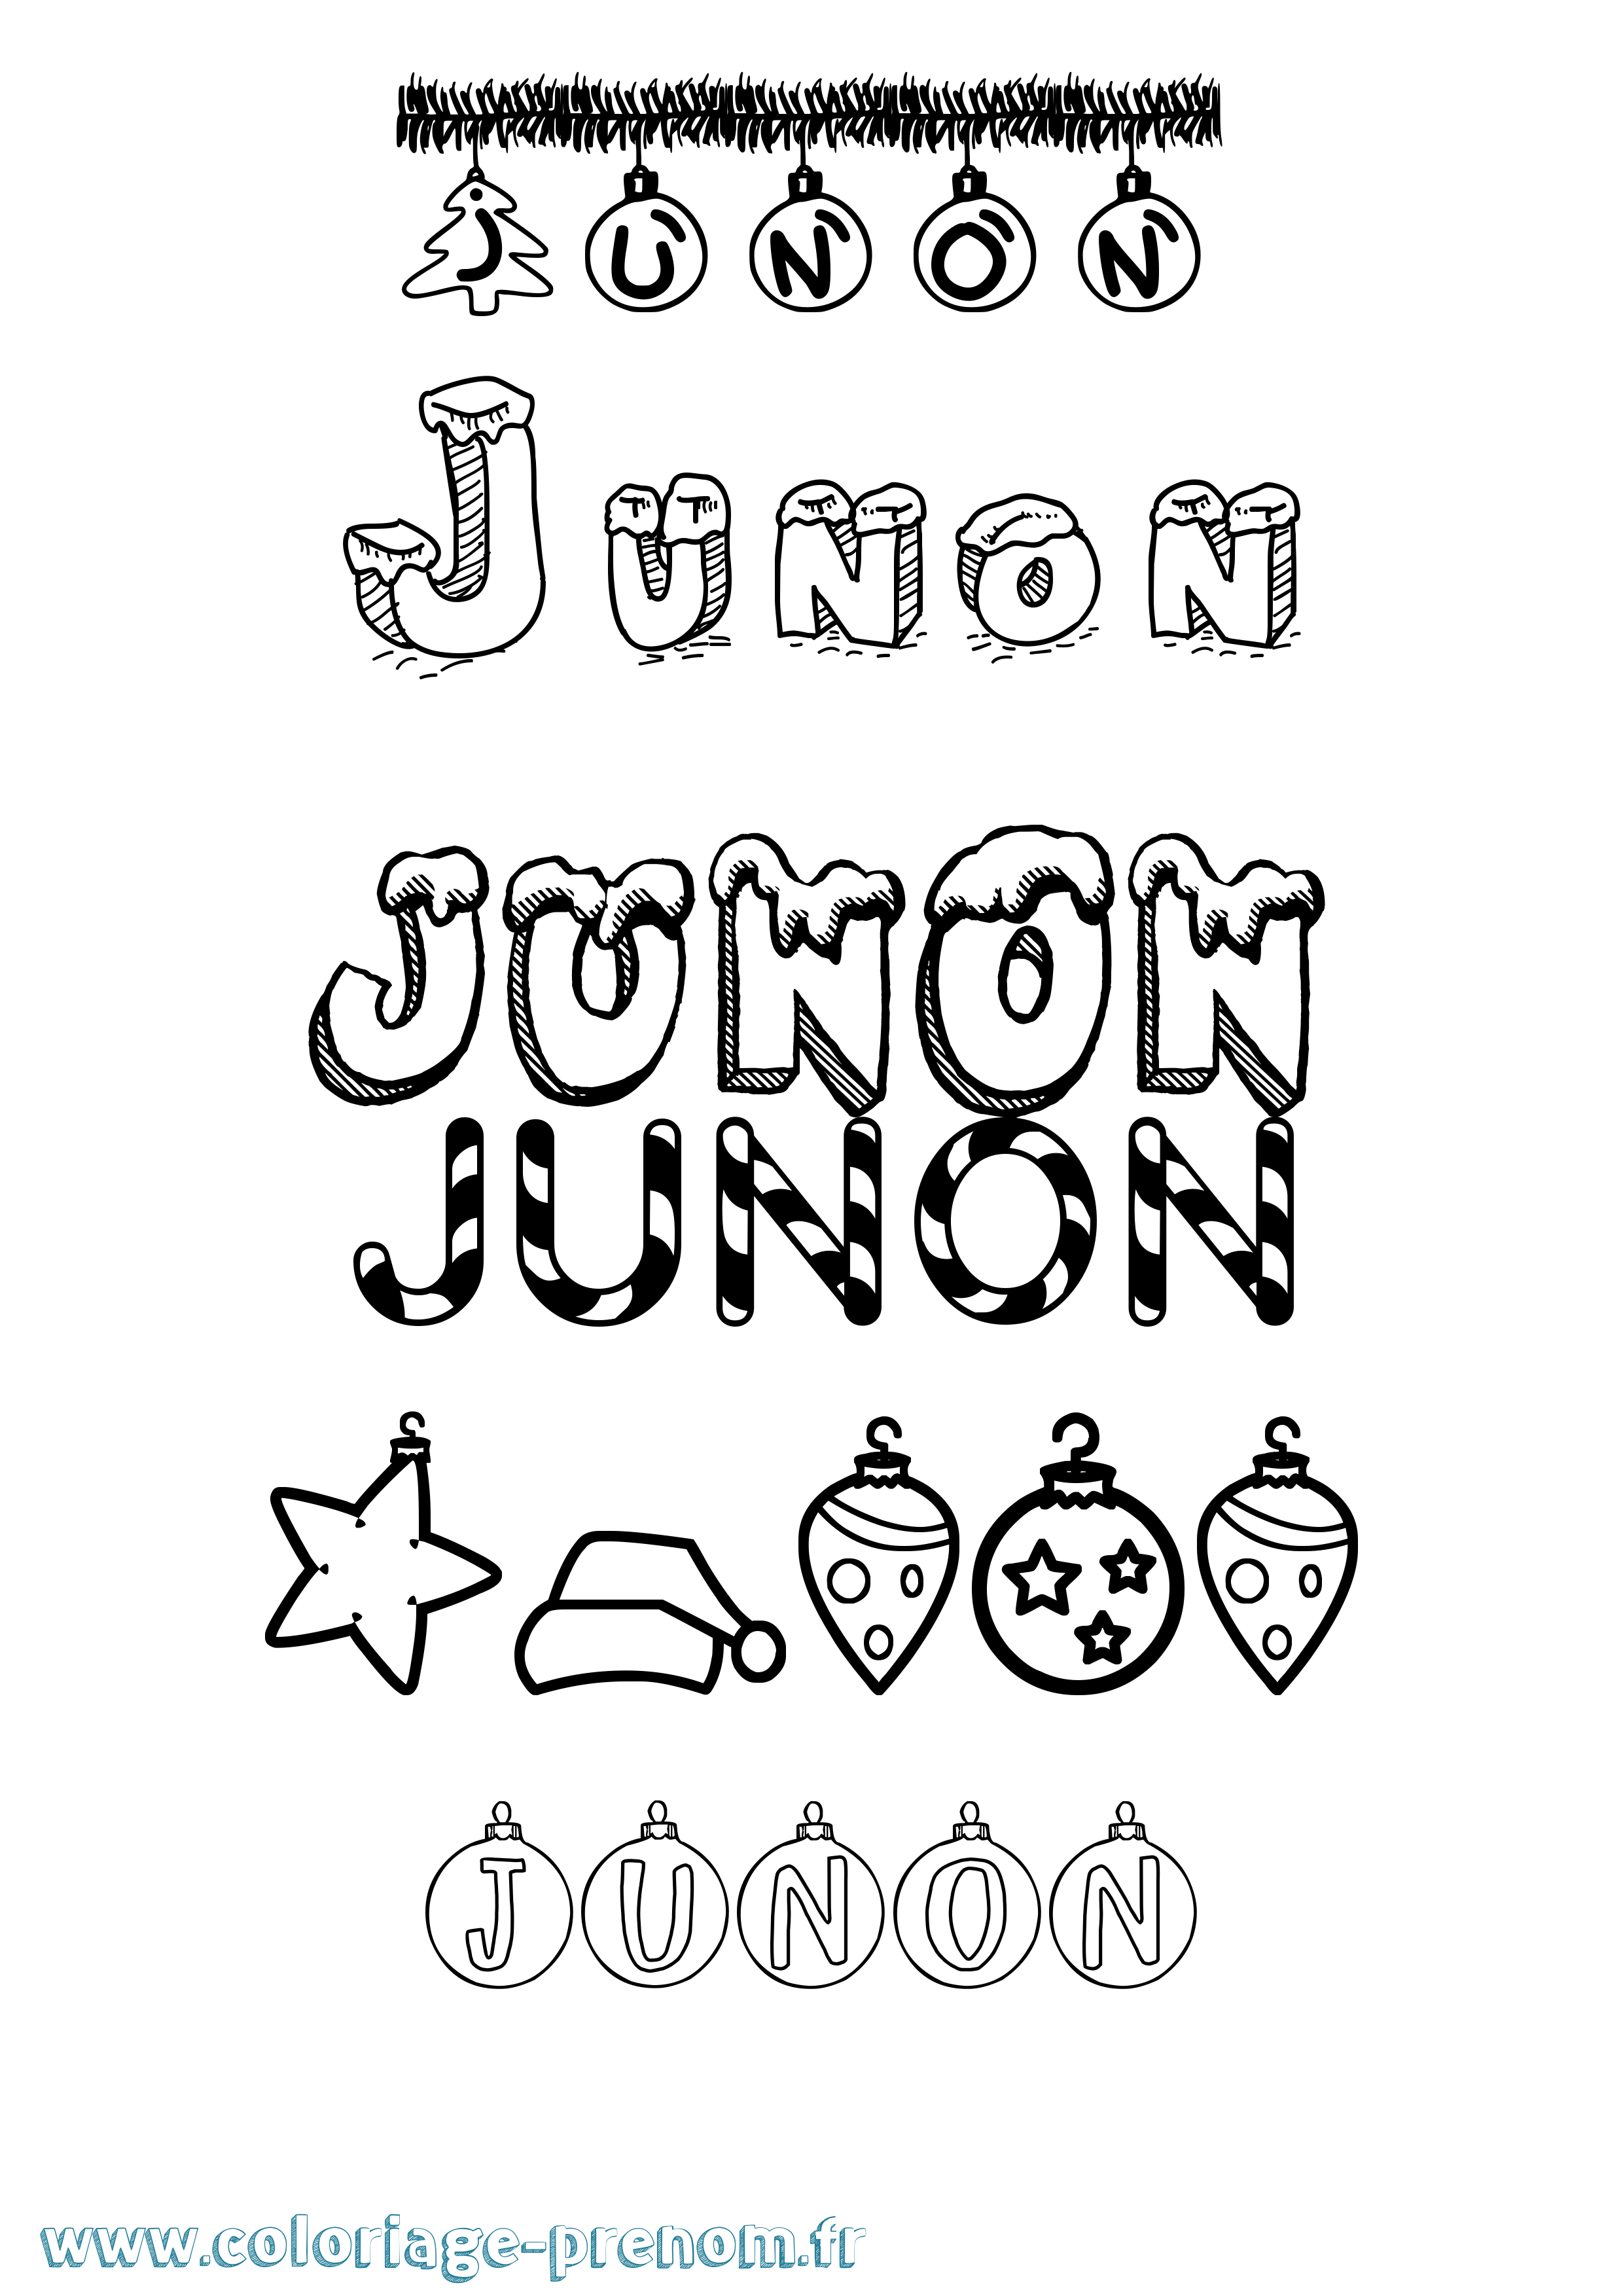 Coloriage prénom Junon